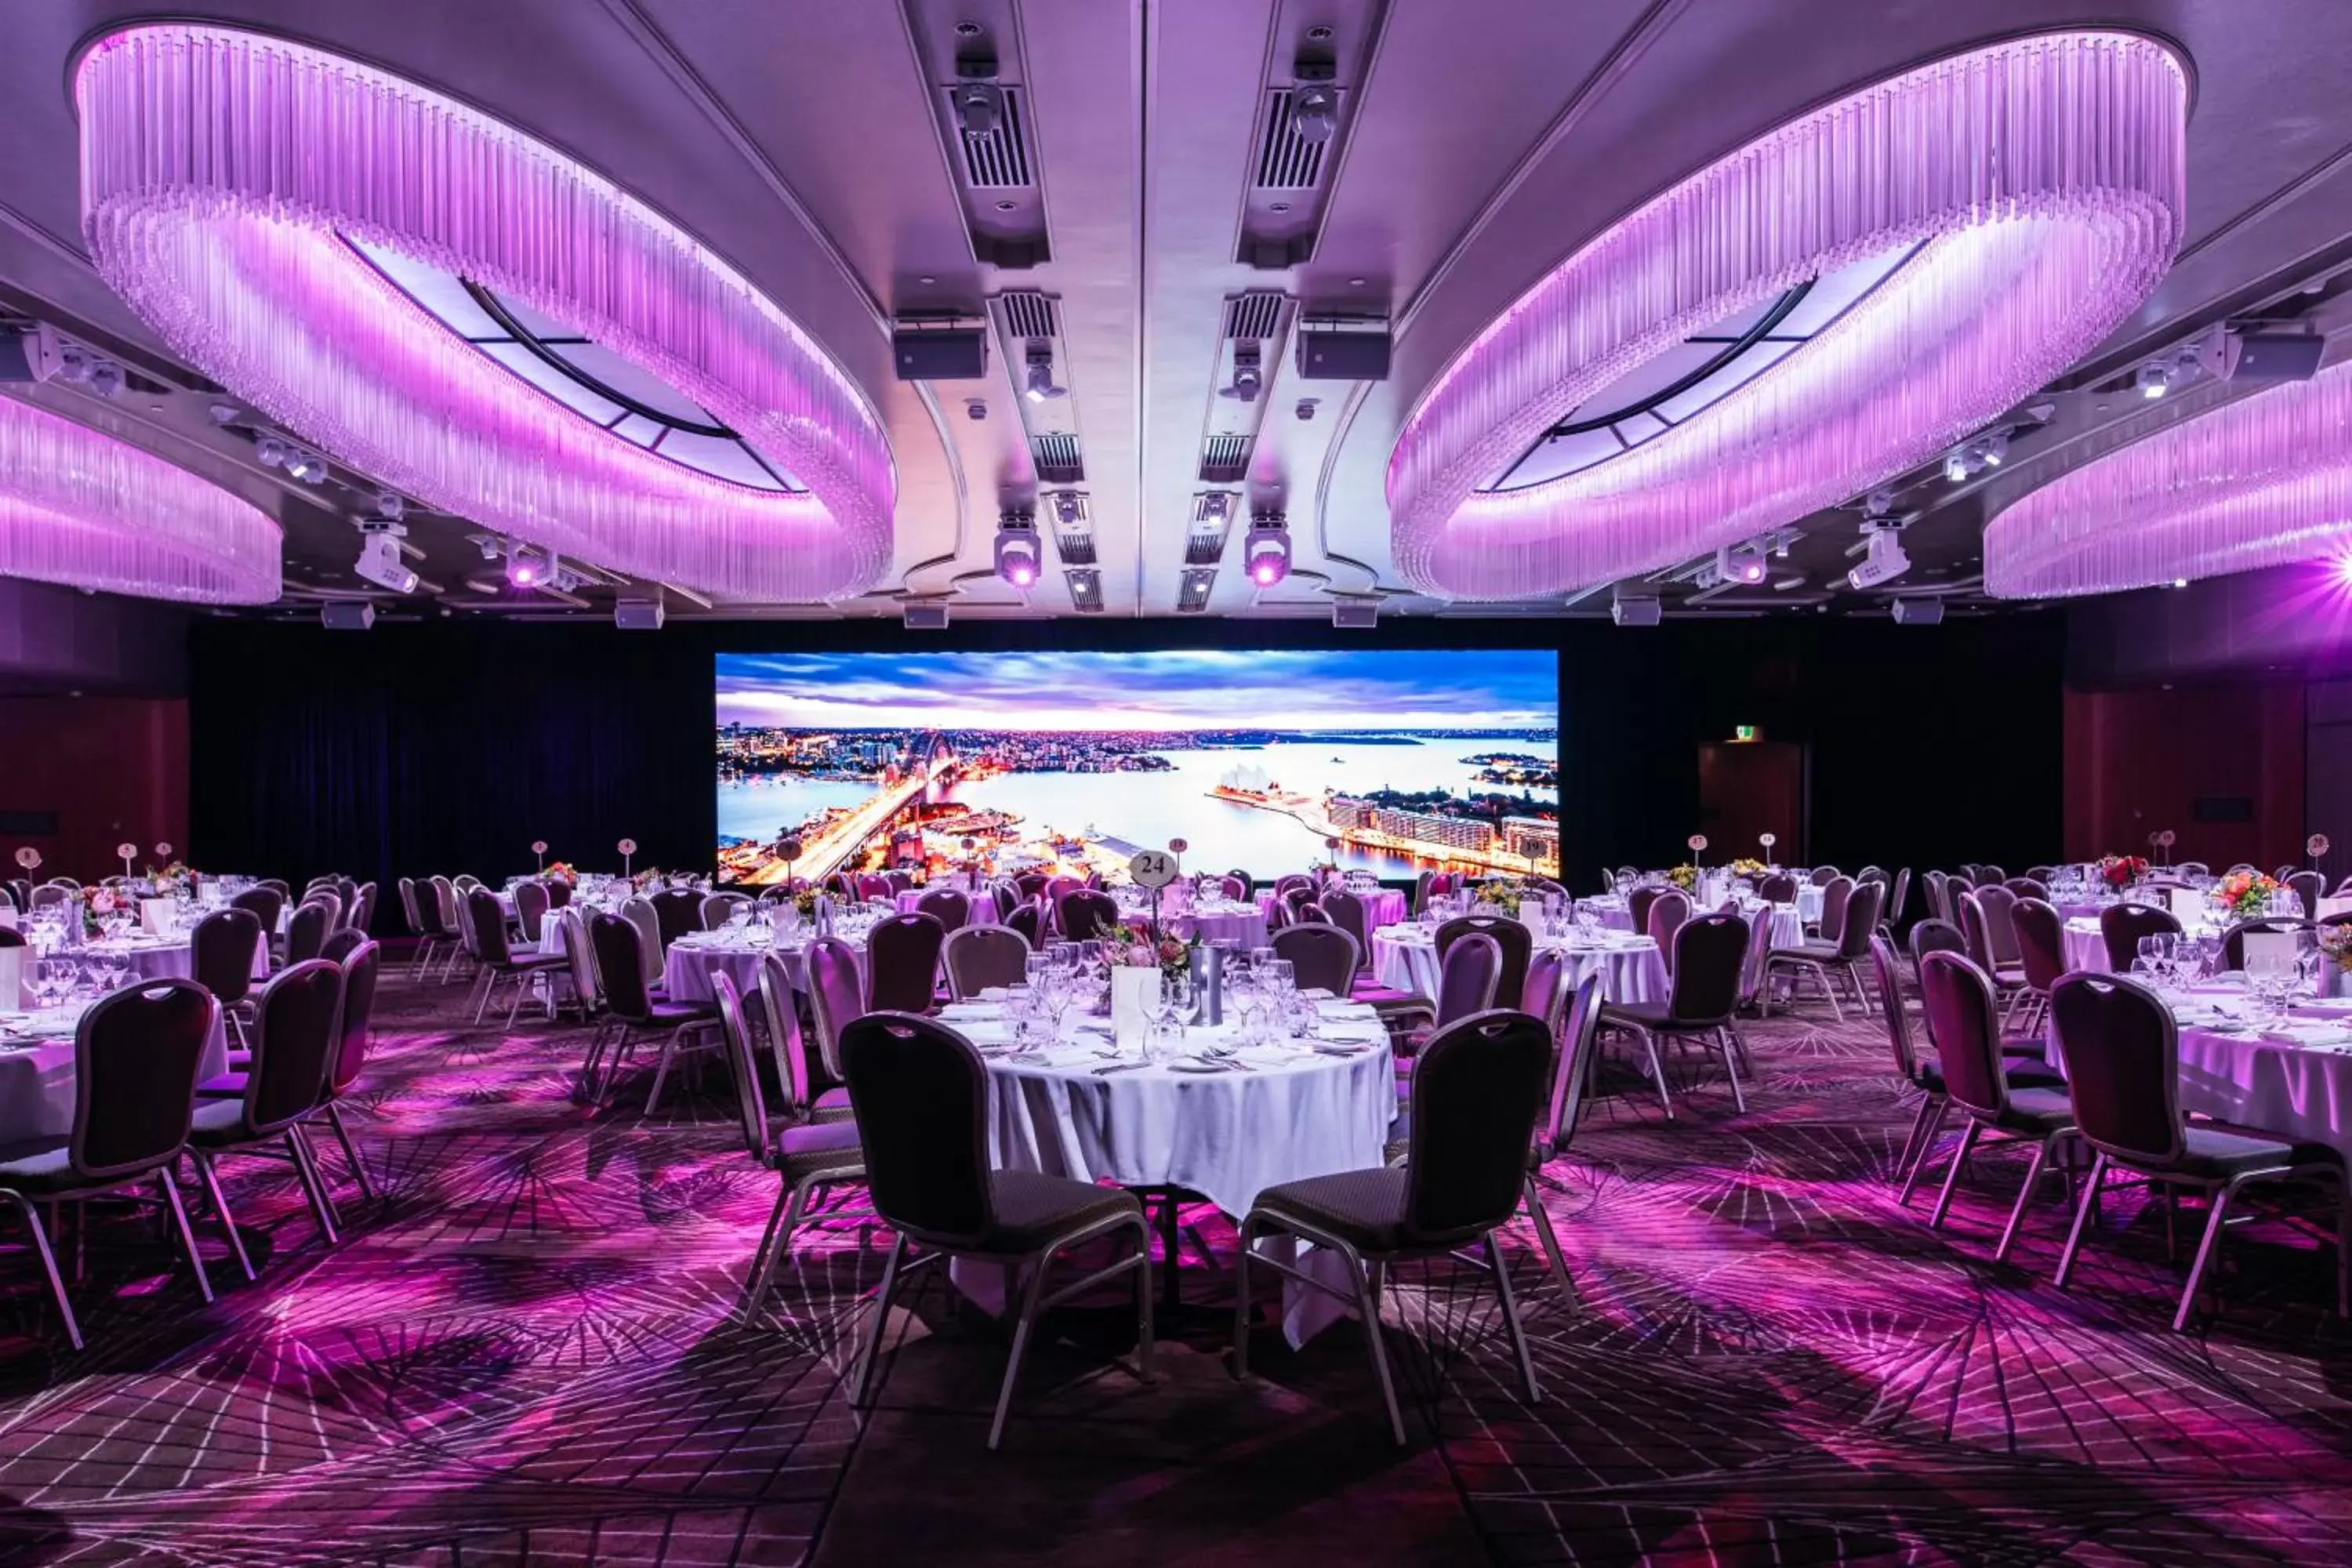 Banquet/Function facilities, Banquet Facilities in Shangri-La Sydney